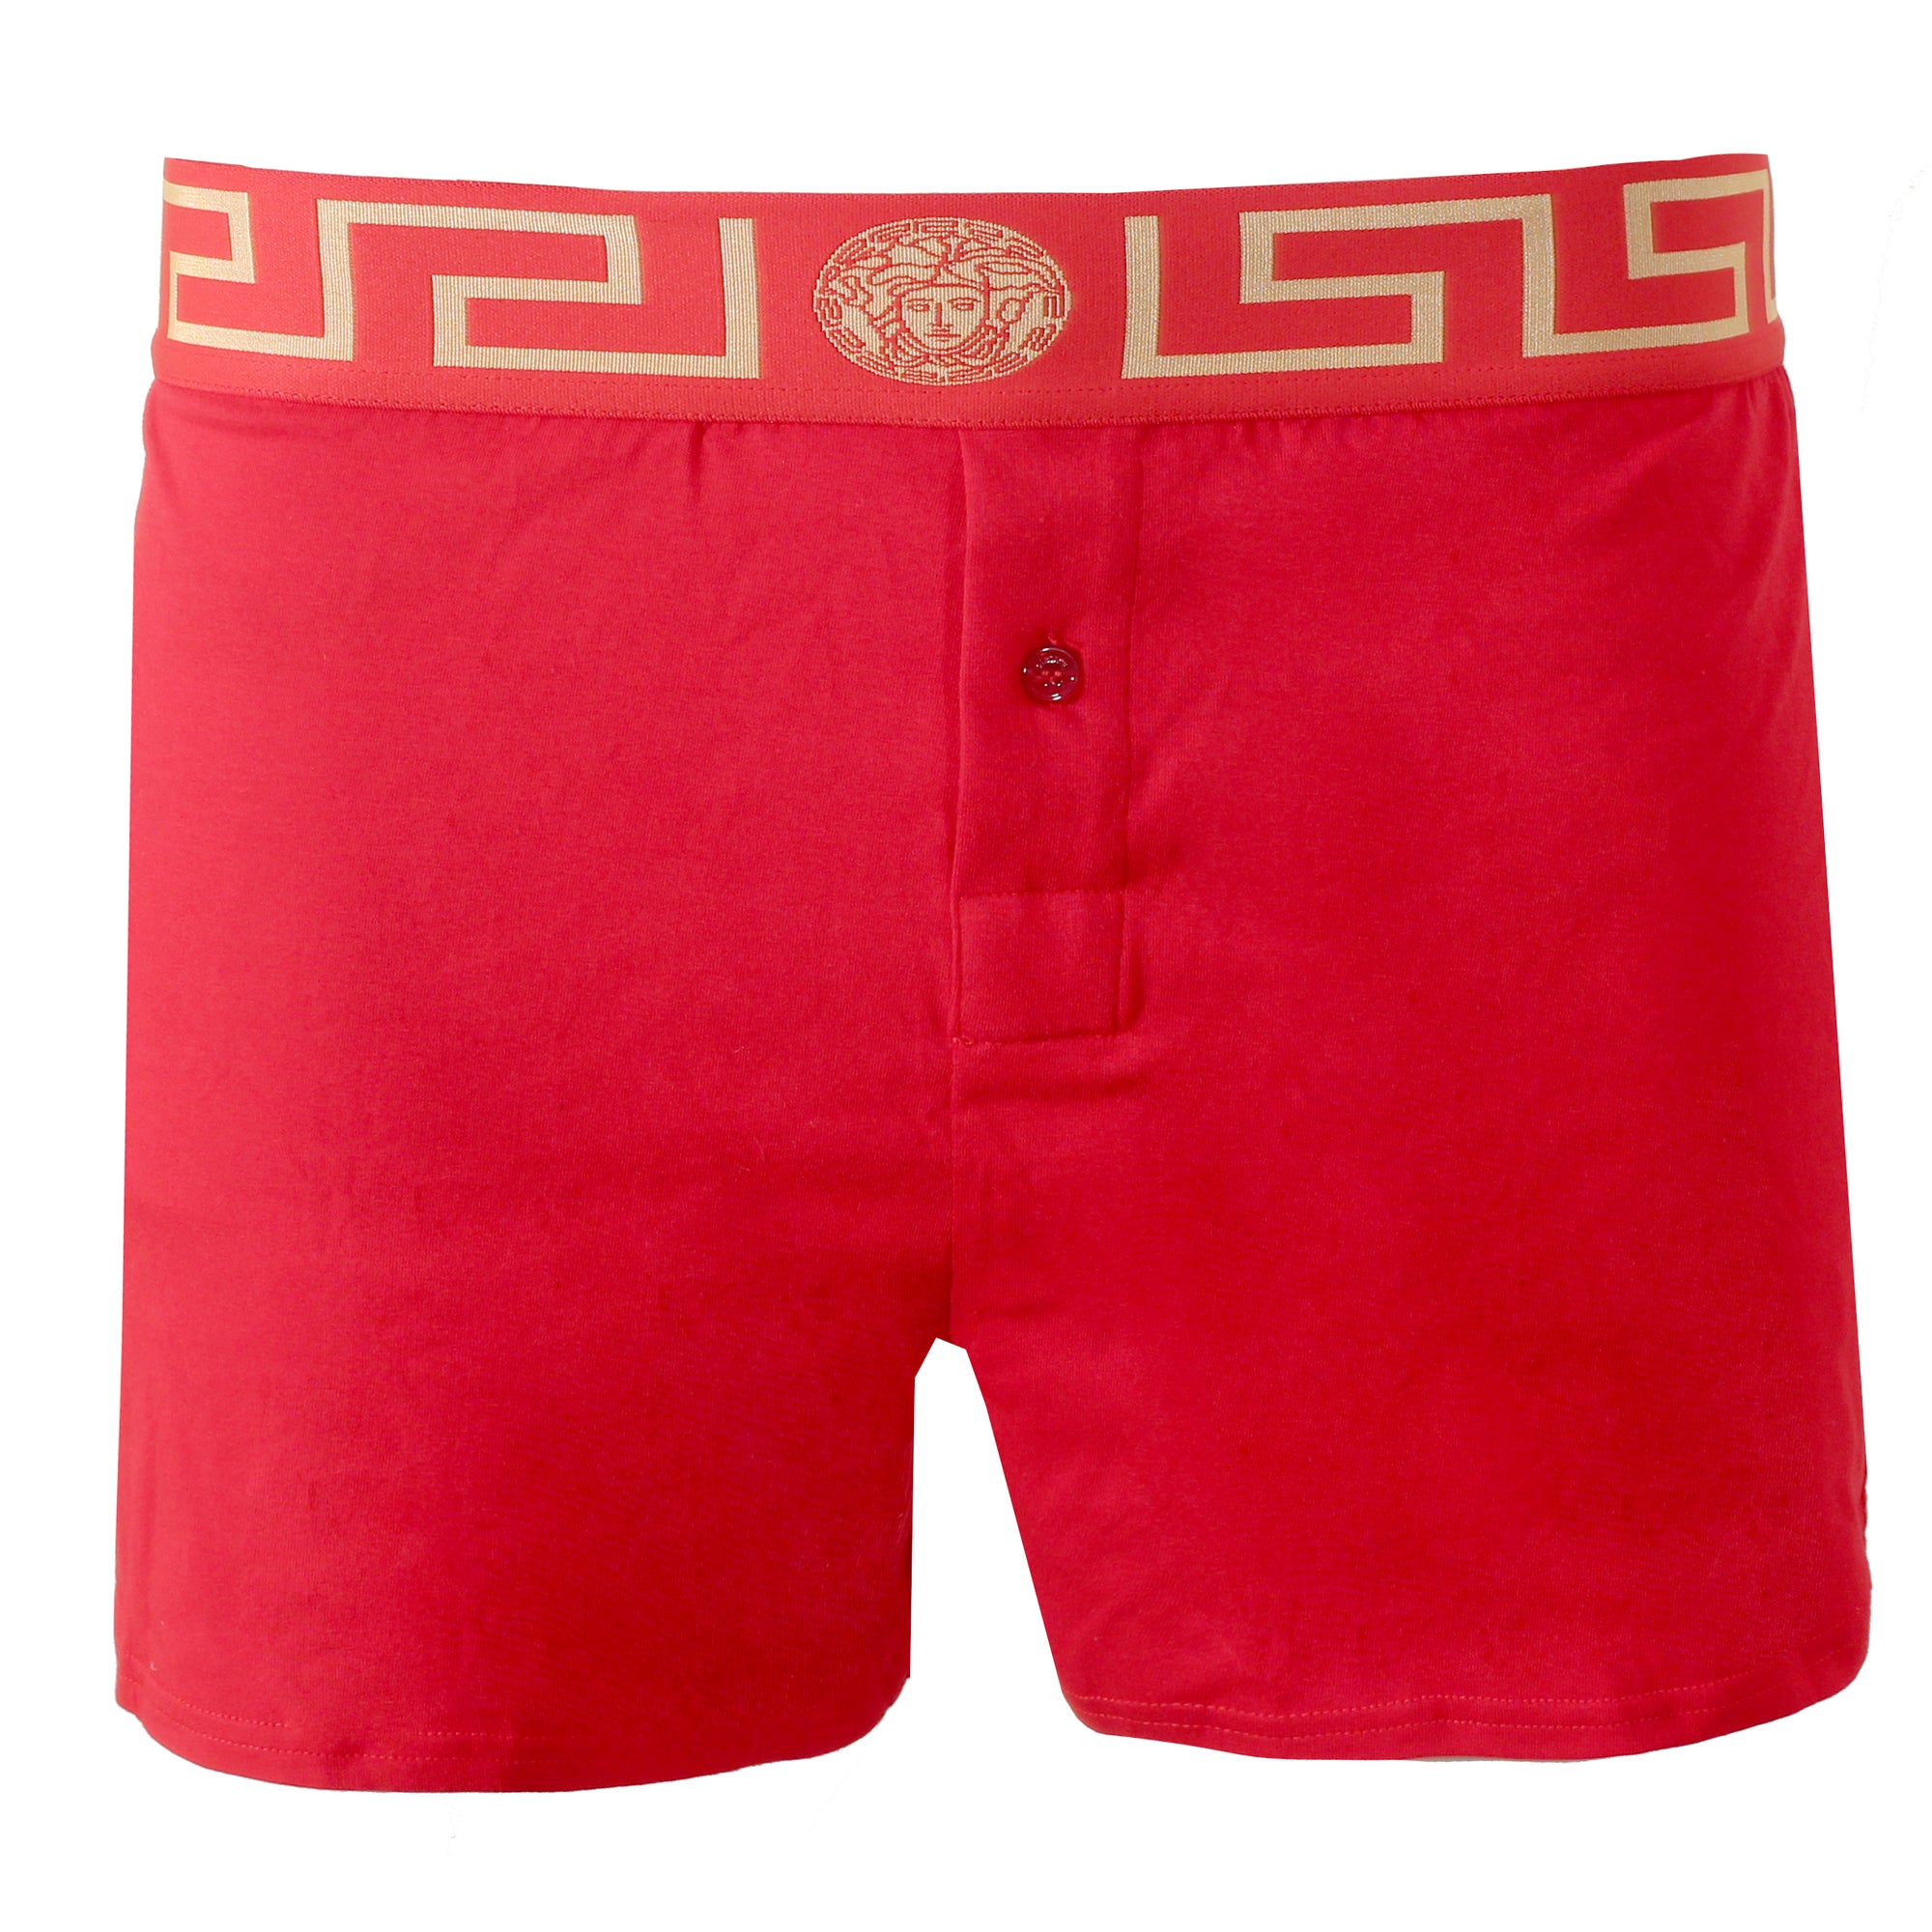 versace greca underwear